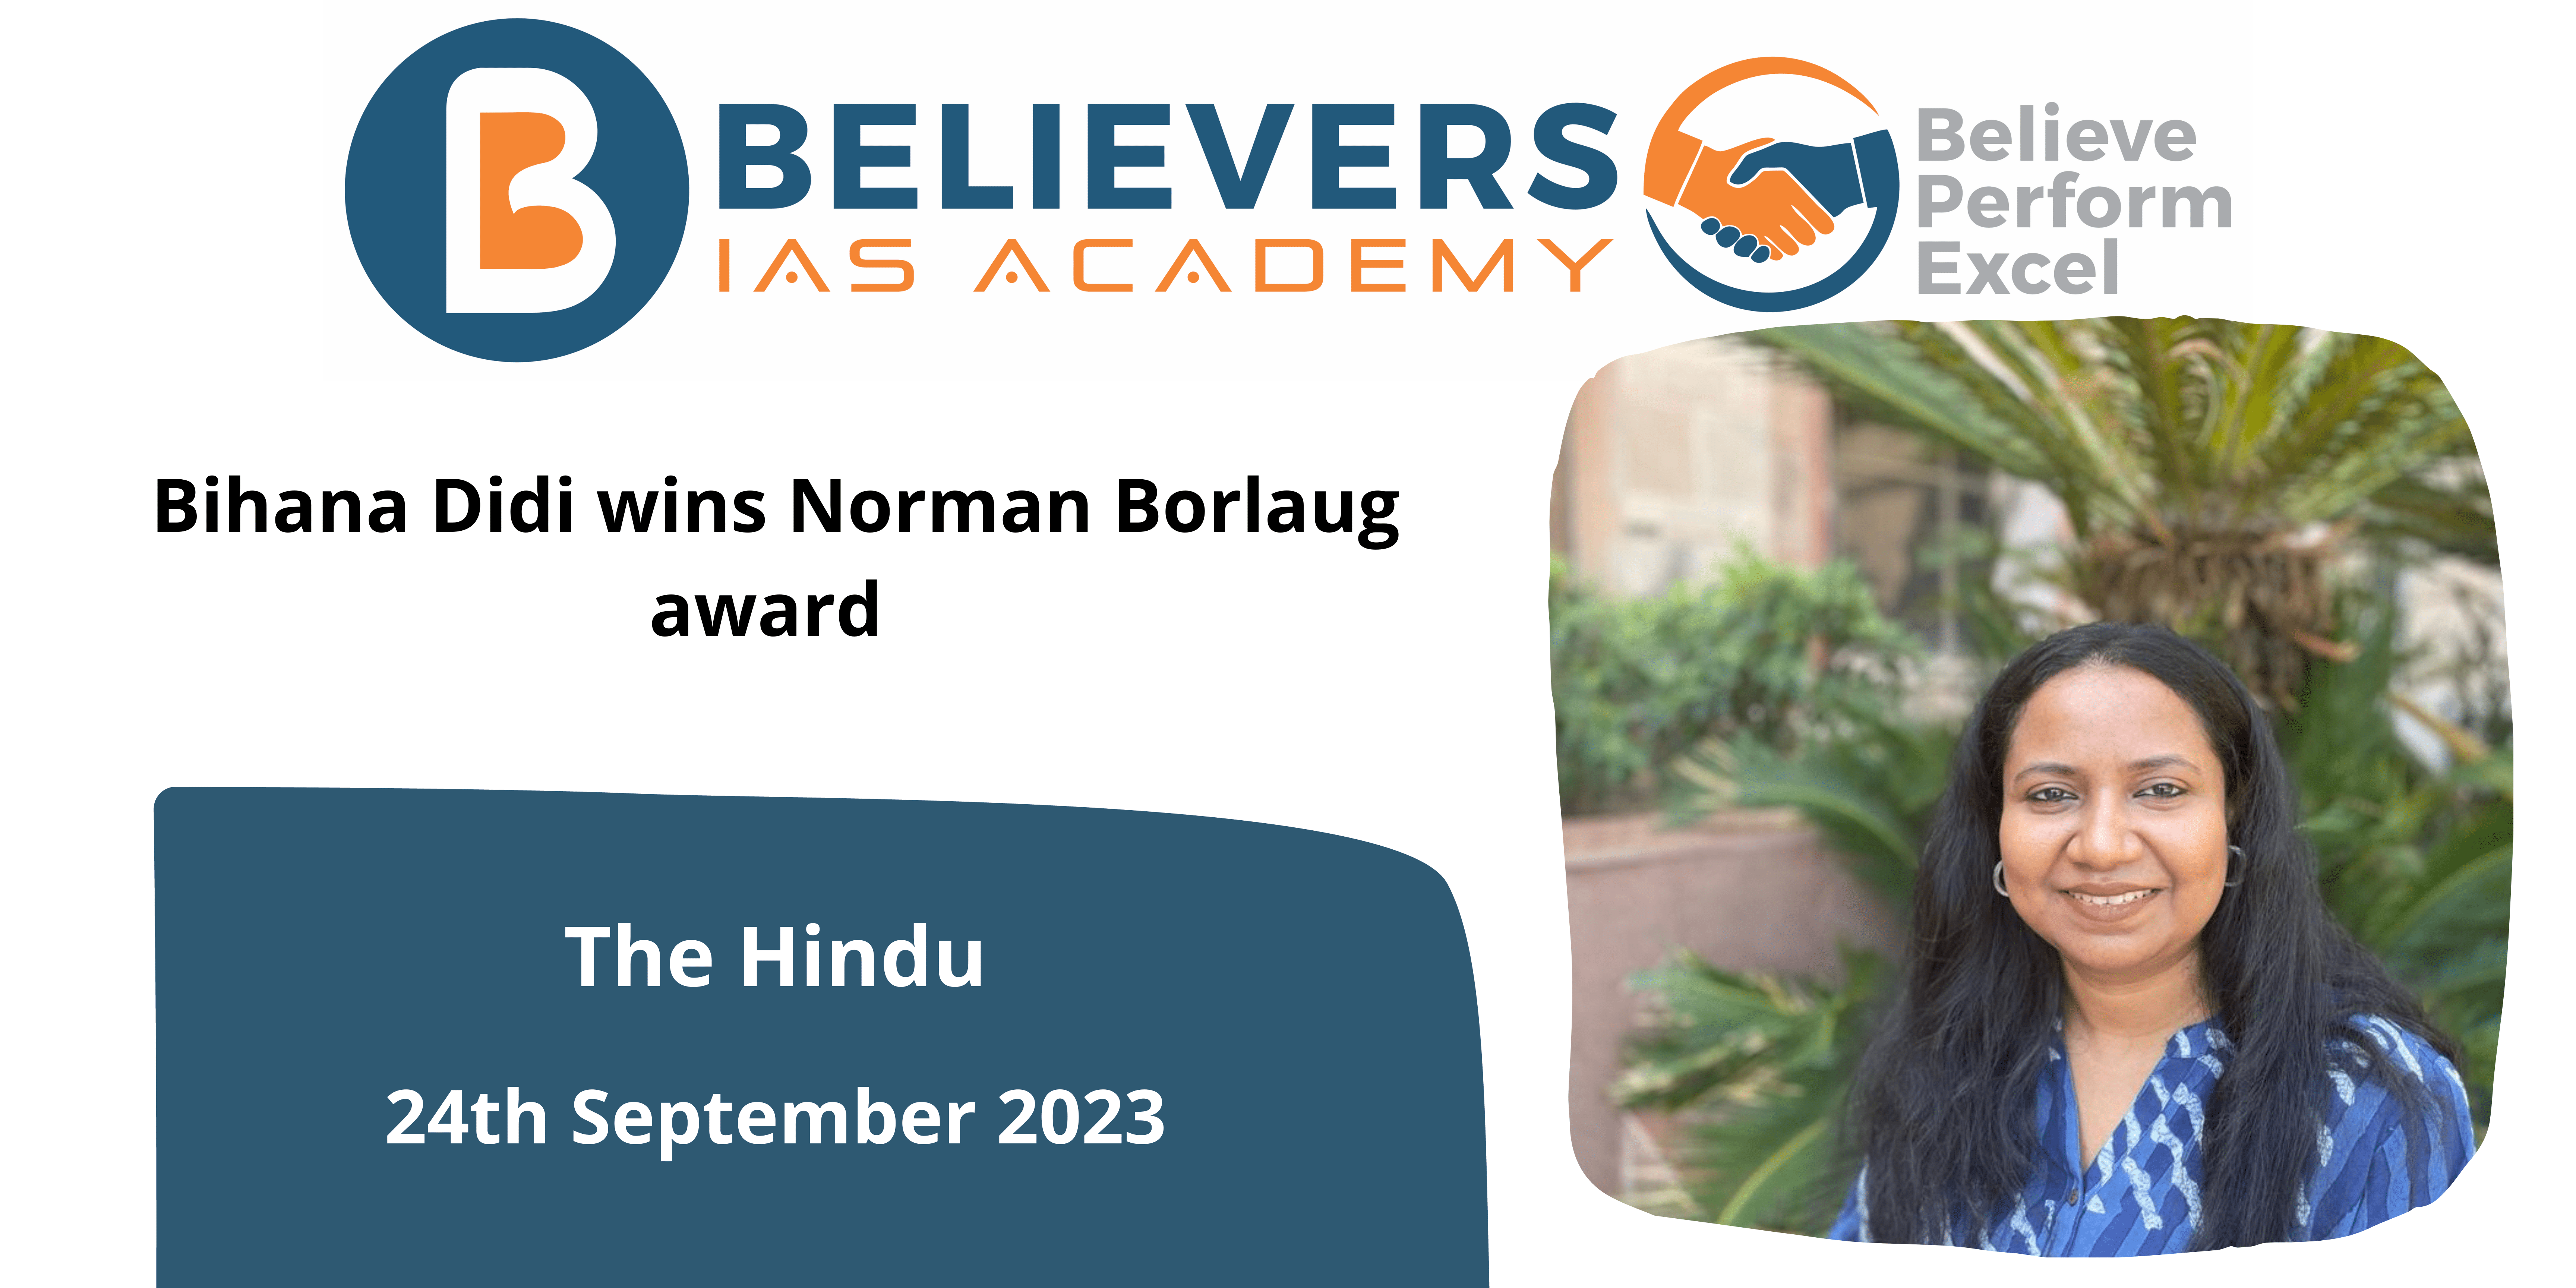 Bihana Didi wins Norman Borlaug award